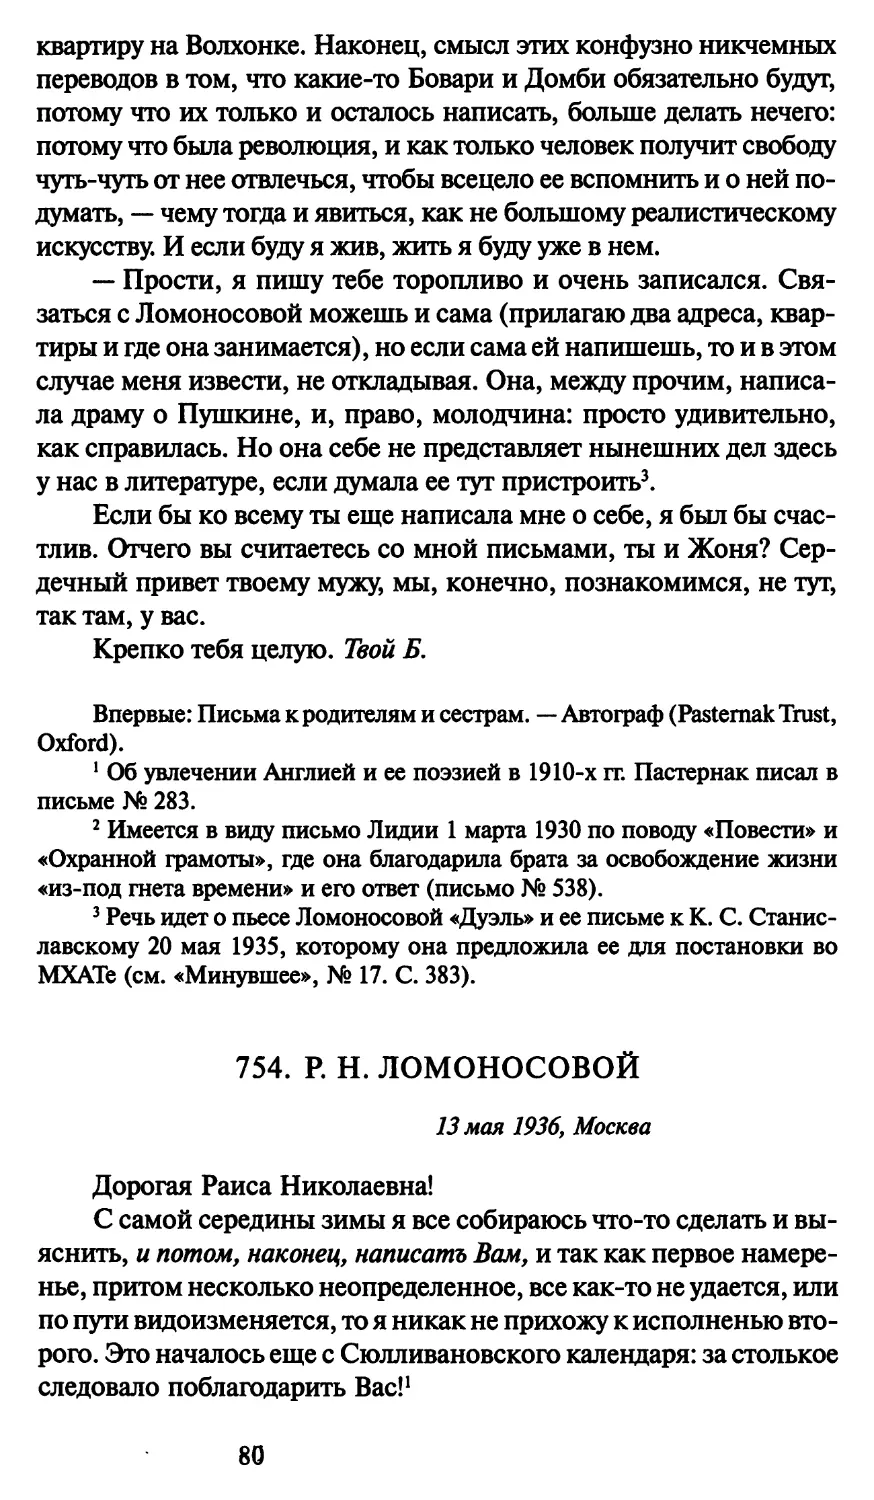 754. Р. Н. Ломоносовой 13 мая 1936